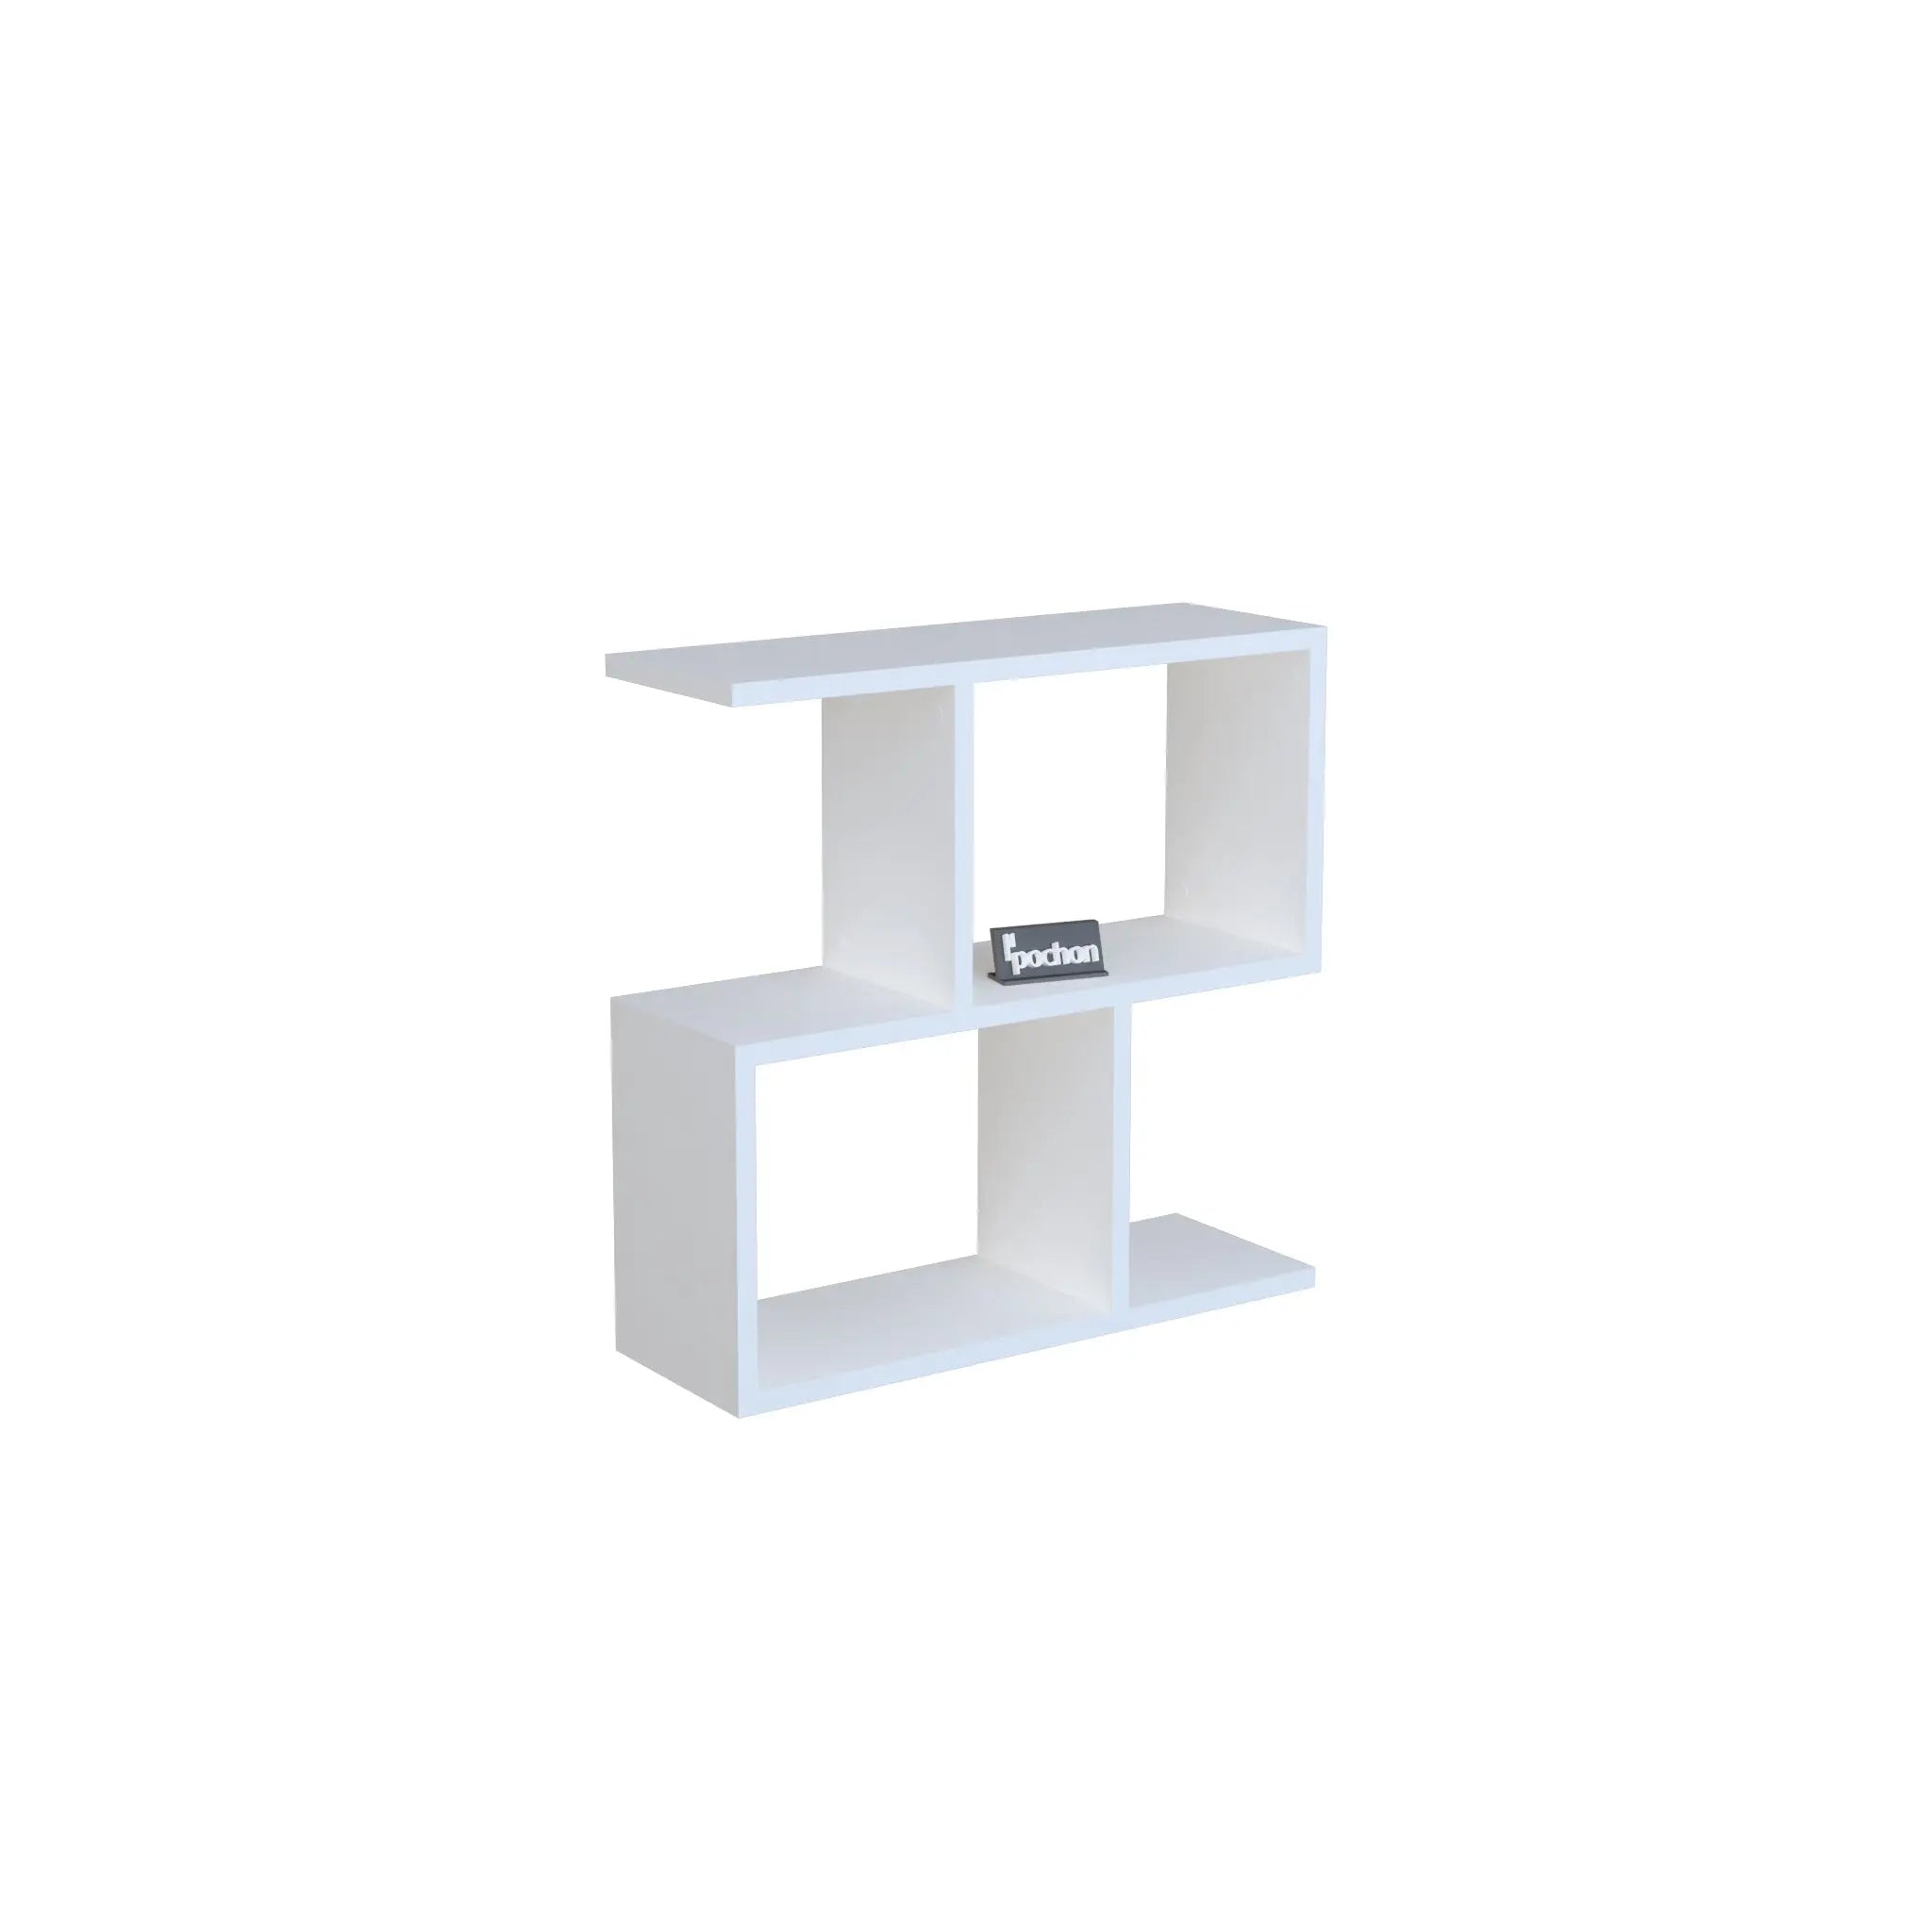 pochon-home-z-vorm-boekenkast-wit-60x60x20-bijzettafel-boekenplank